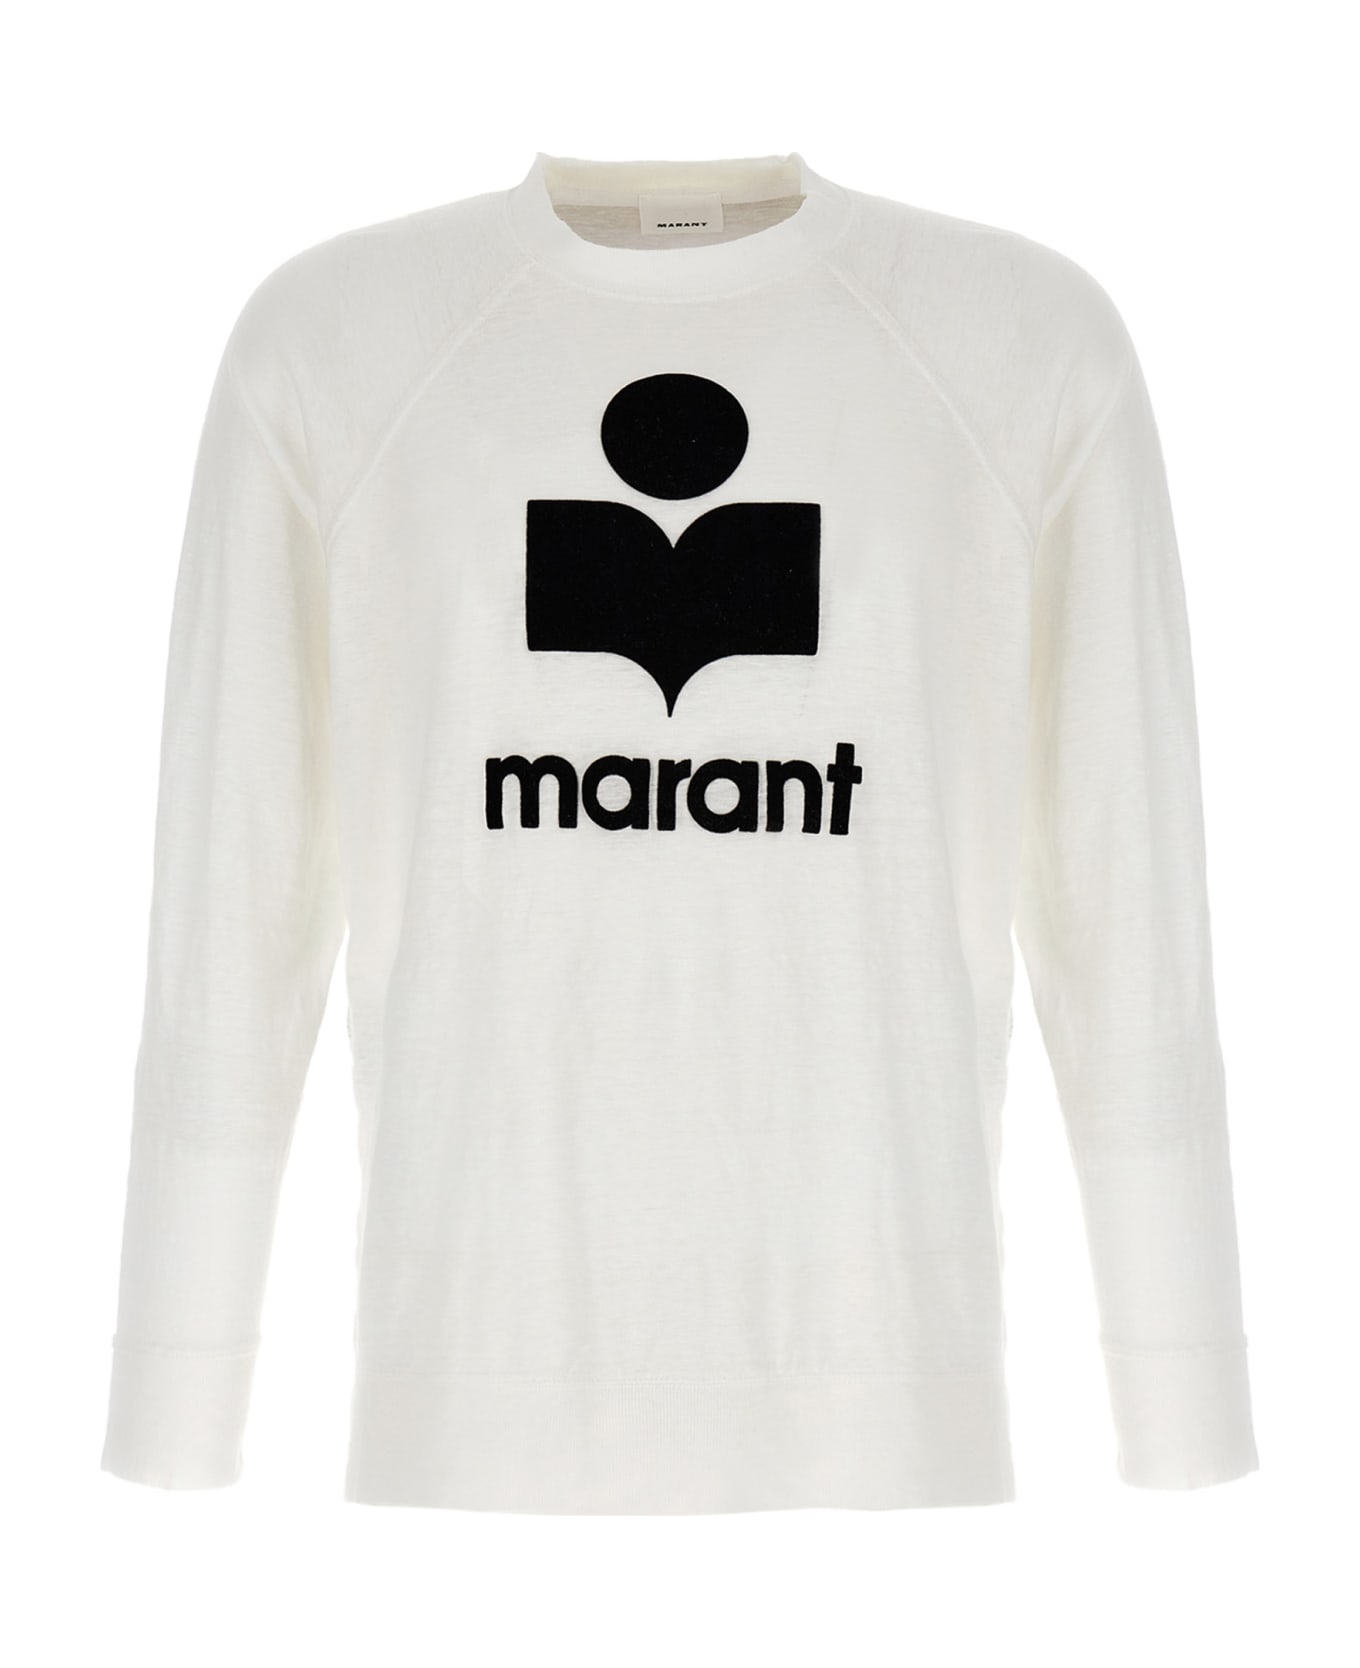 Isabel Marant Kieffer Linen Crew Neck T-shirt - White/Black フリース